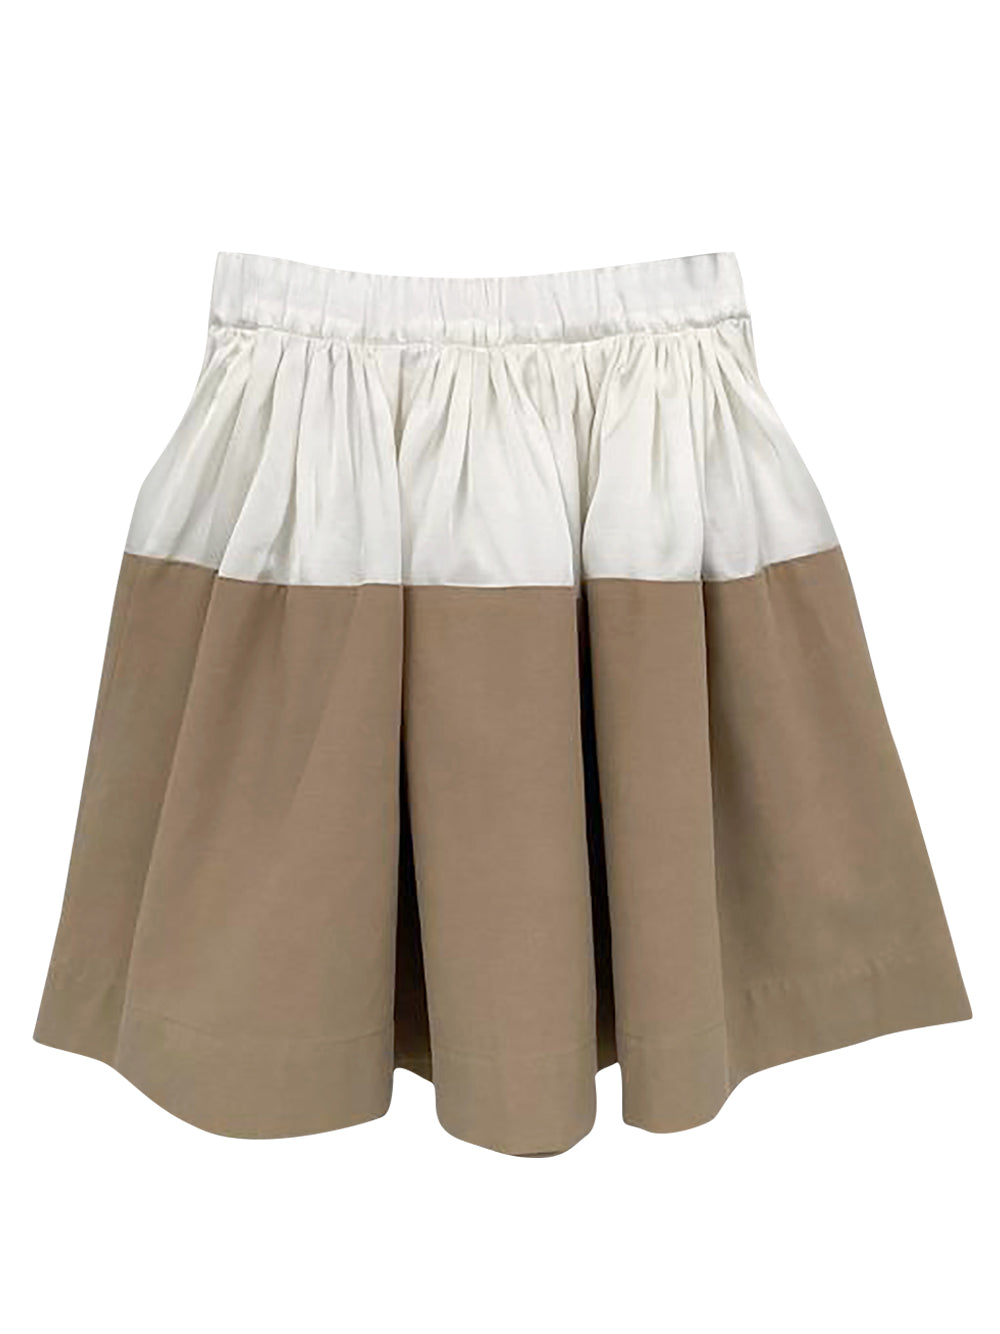 PREORDER: Tilda Sand Wide Skirt